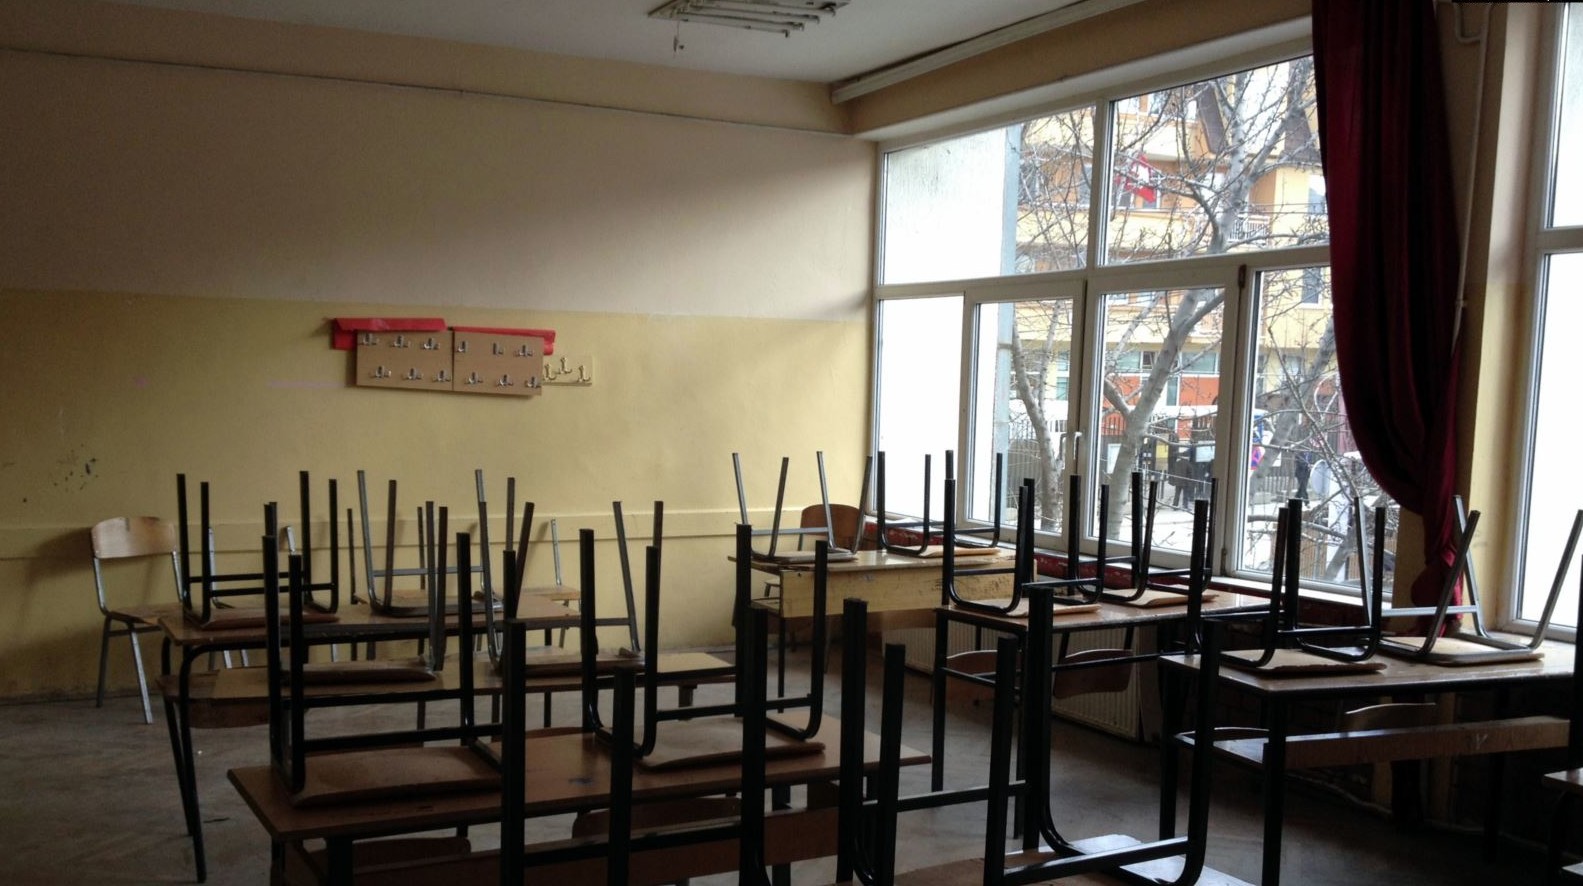 Të hënën hapen shkollat, SBASHK-u sërish kërcënon me grevë